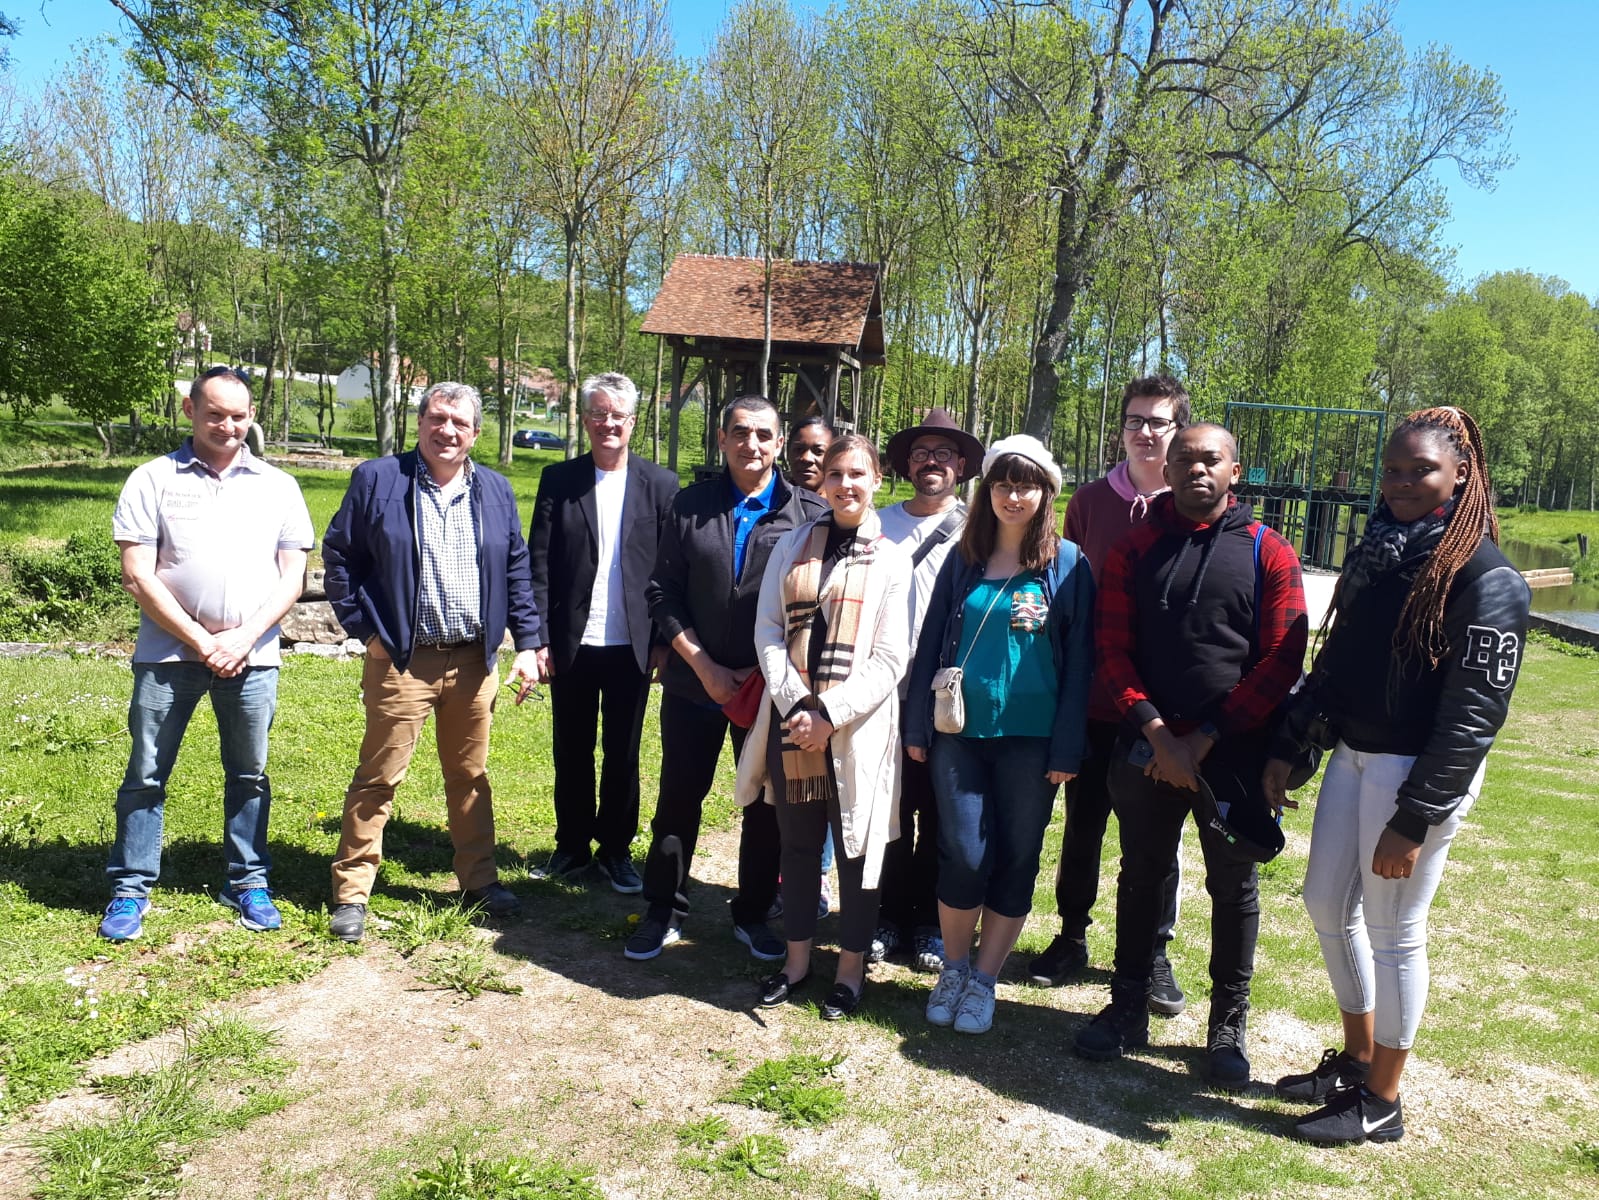 Visite d'un moulin en France par les étudiants et les chefs de La Cité.